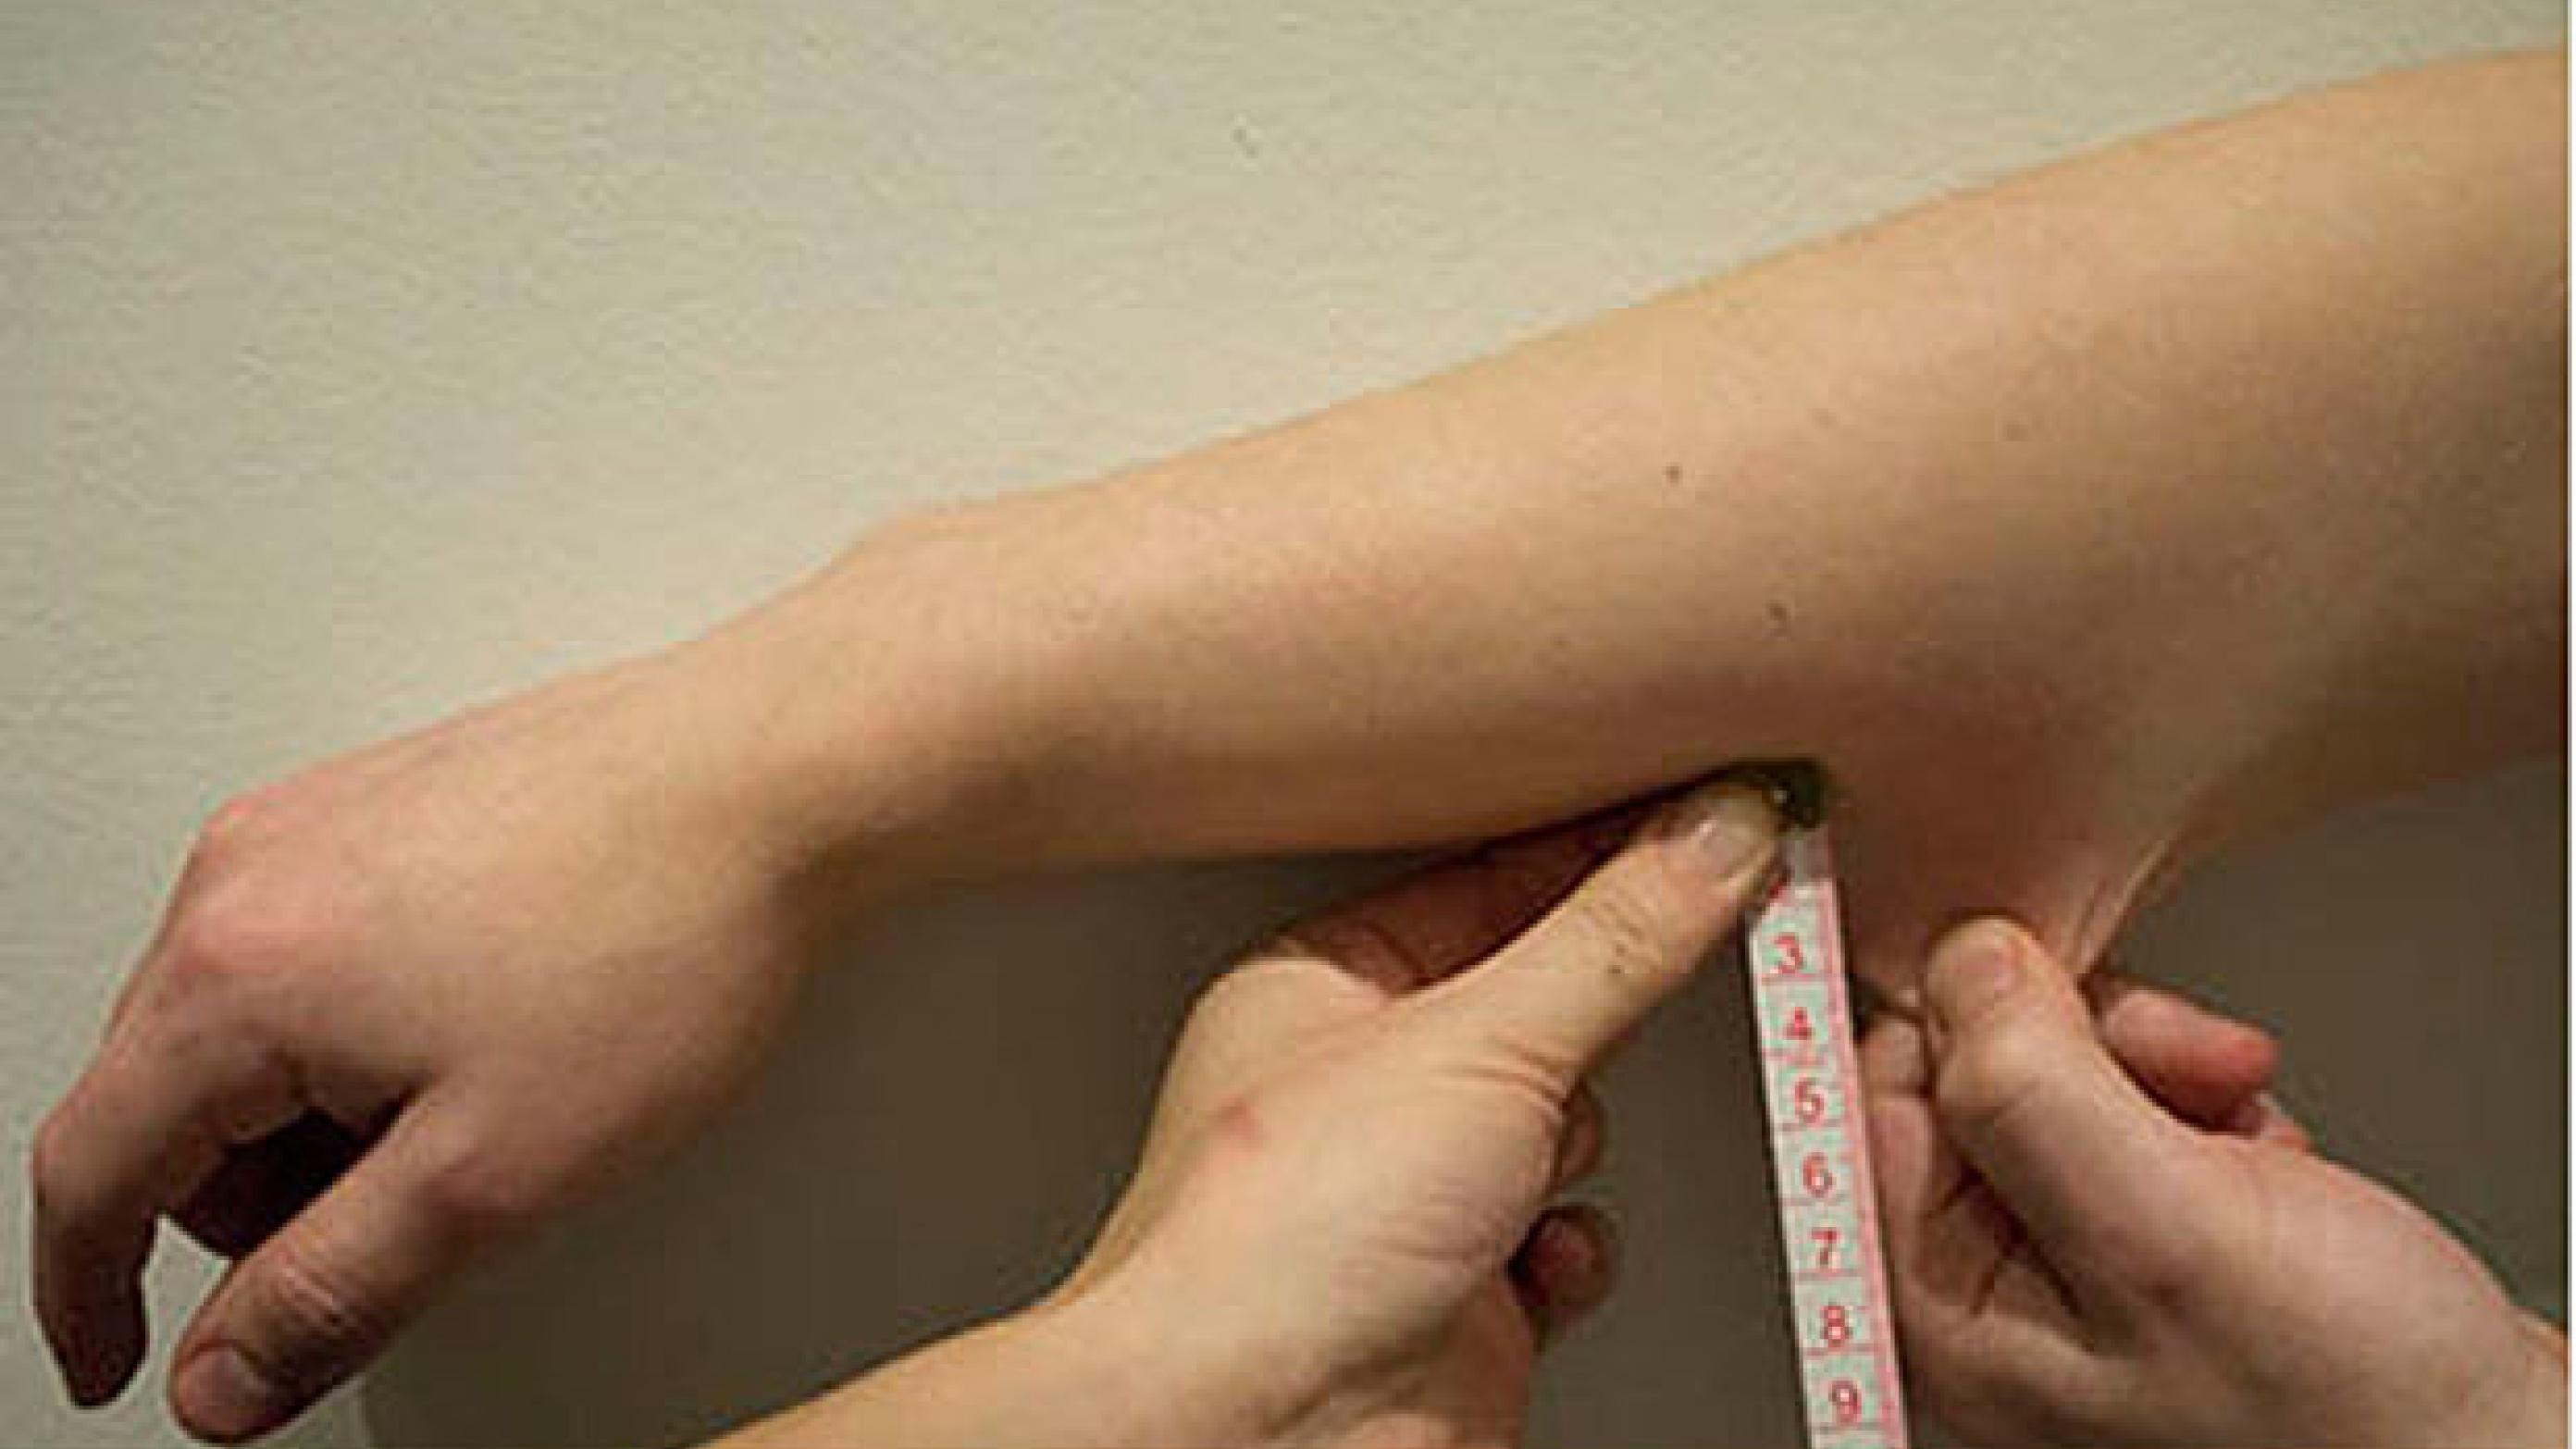 Klinisk undersøgelse af hudens overtrækbarhed testes på volarsiden af underarmen. 